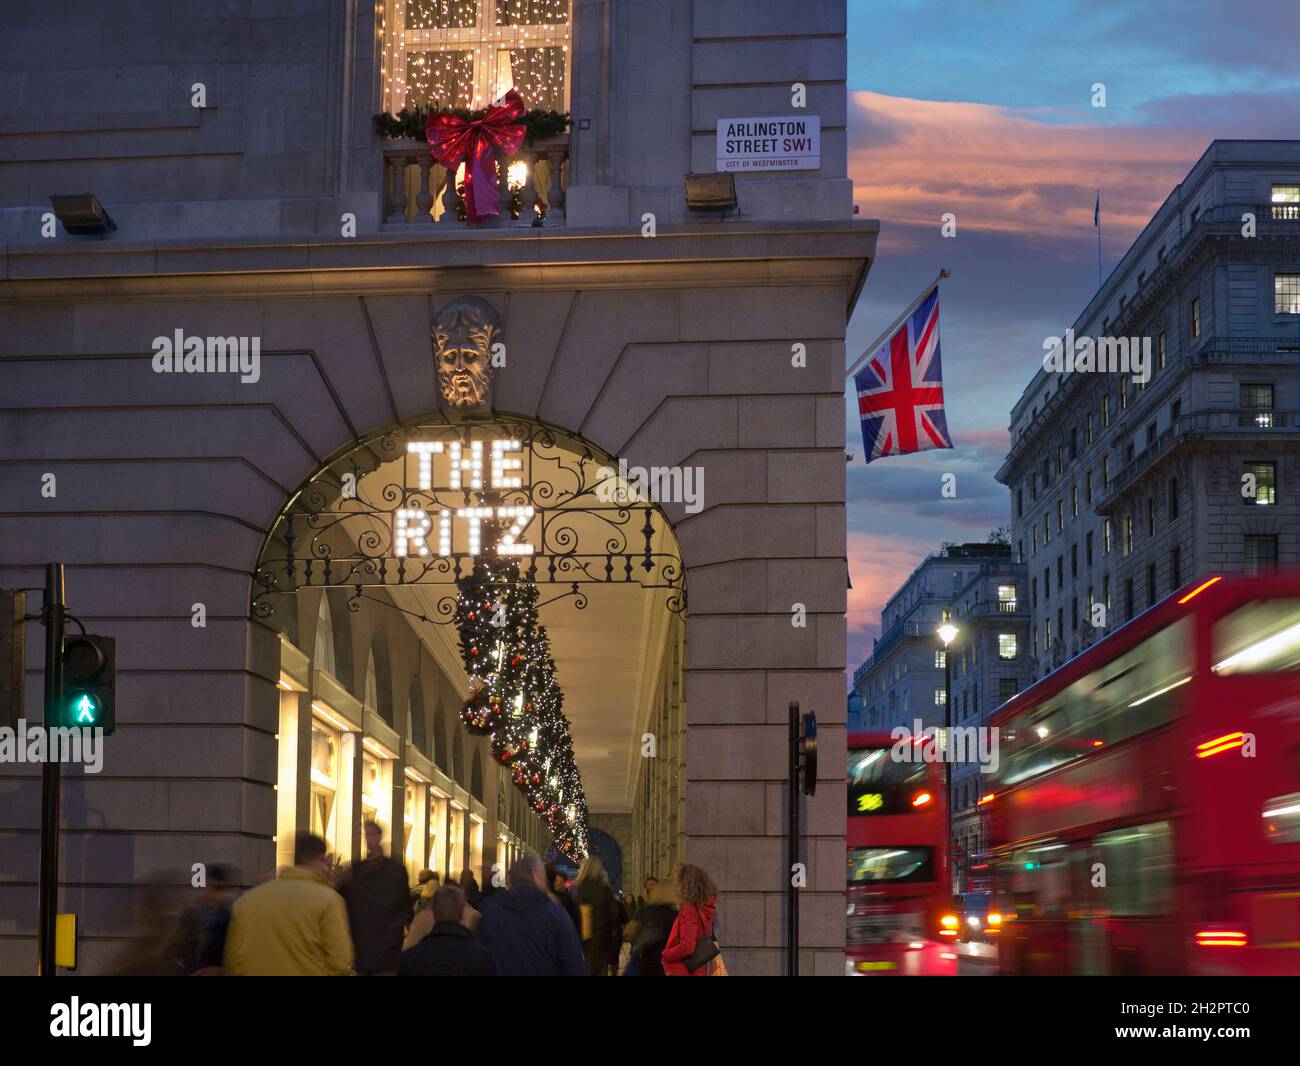 IL RITZ LONDON CHRISTMAS FOLLE il Ritz Hotel durante l'inverno affollata stagione festiva, luci notturne con il cartello "The Ritz" illuminato, con la bandiera di Union Jack, gli acquirenti e passando gli autobus rossi di Londra sfocati Arlington Street Piccadilly London UK Foto Stock